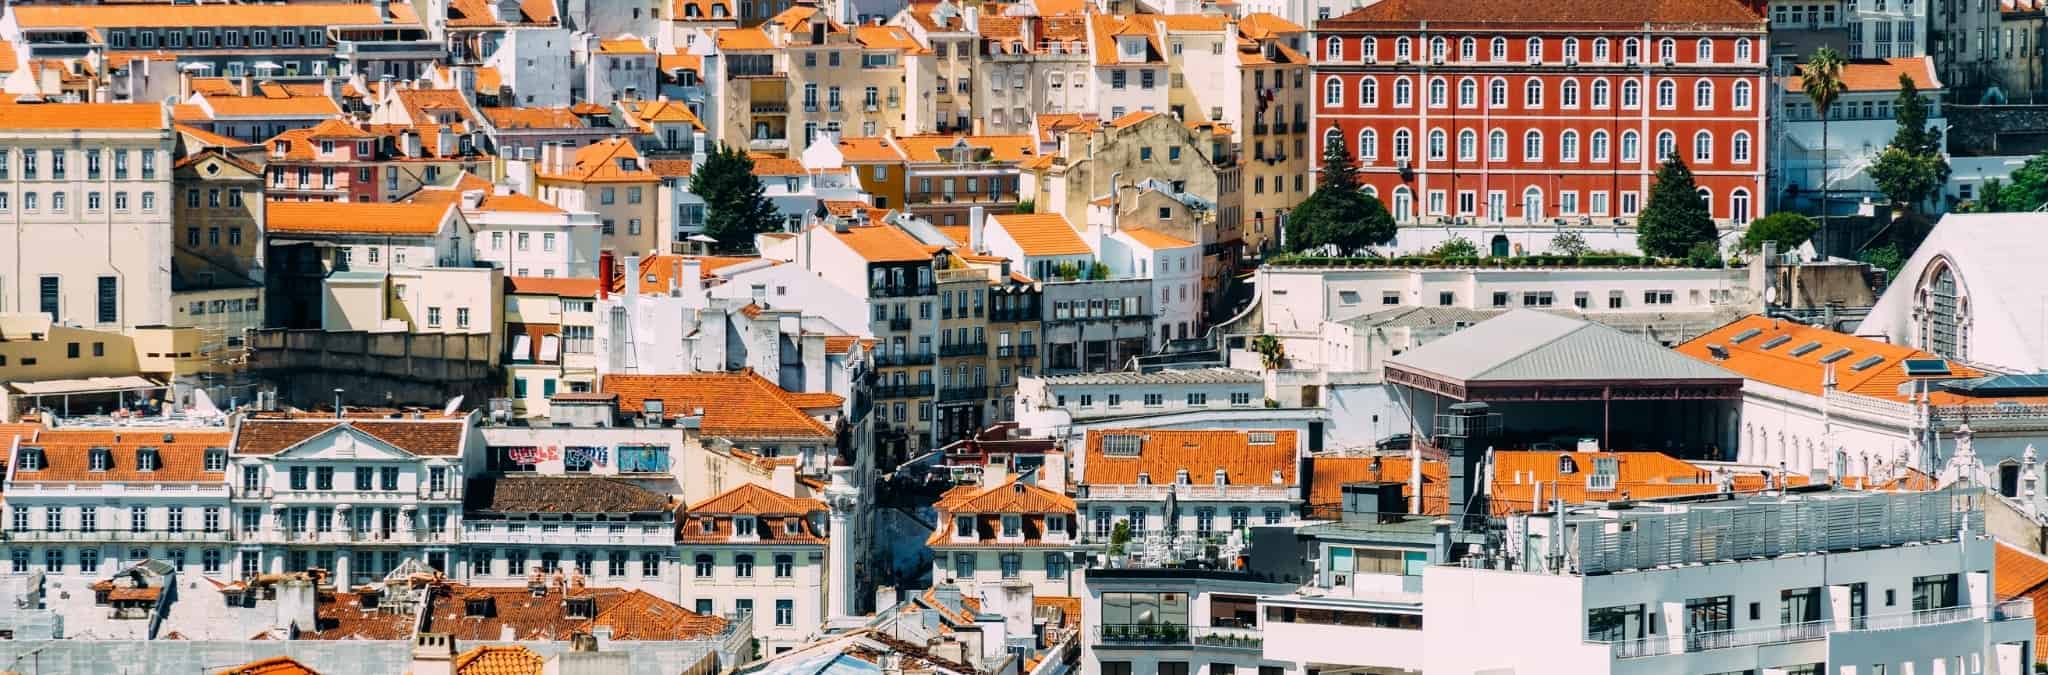 houses in Lisbon